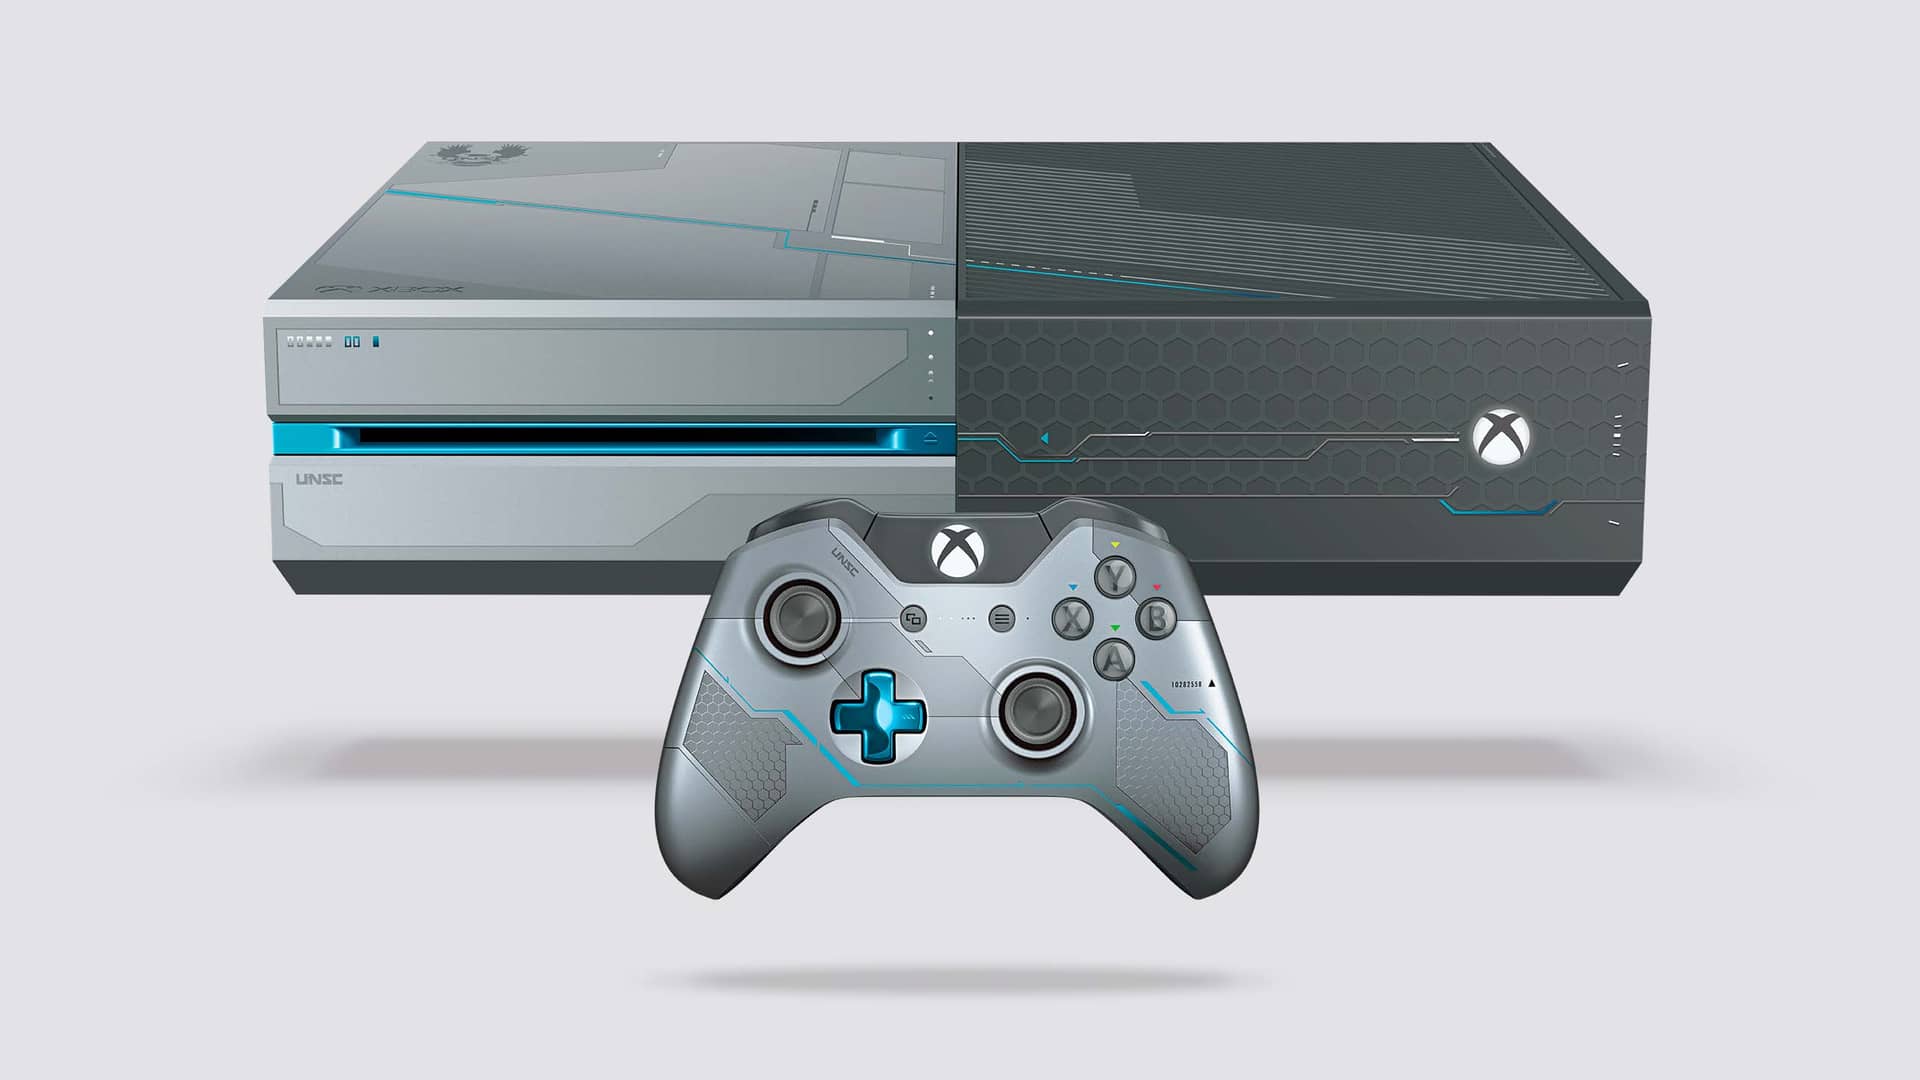 Consola Xbox one y mando edición limitada halo 5 para hablar sobre las posibilidades dee retrocompatibilidad de la misma